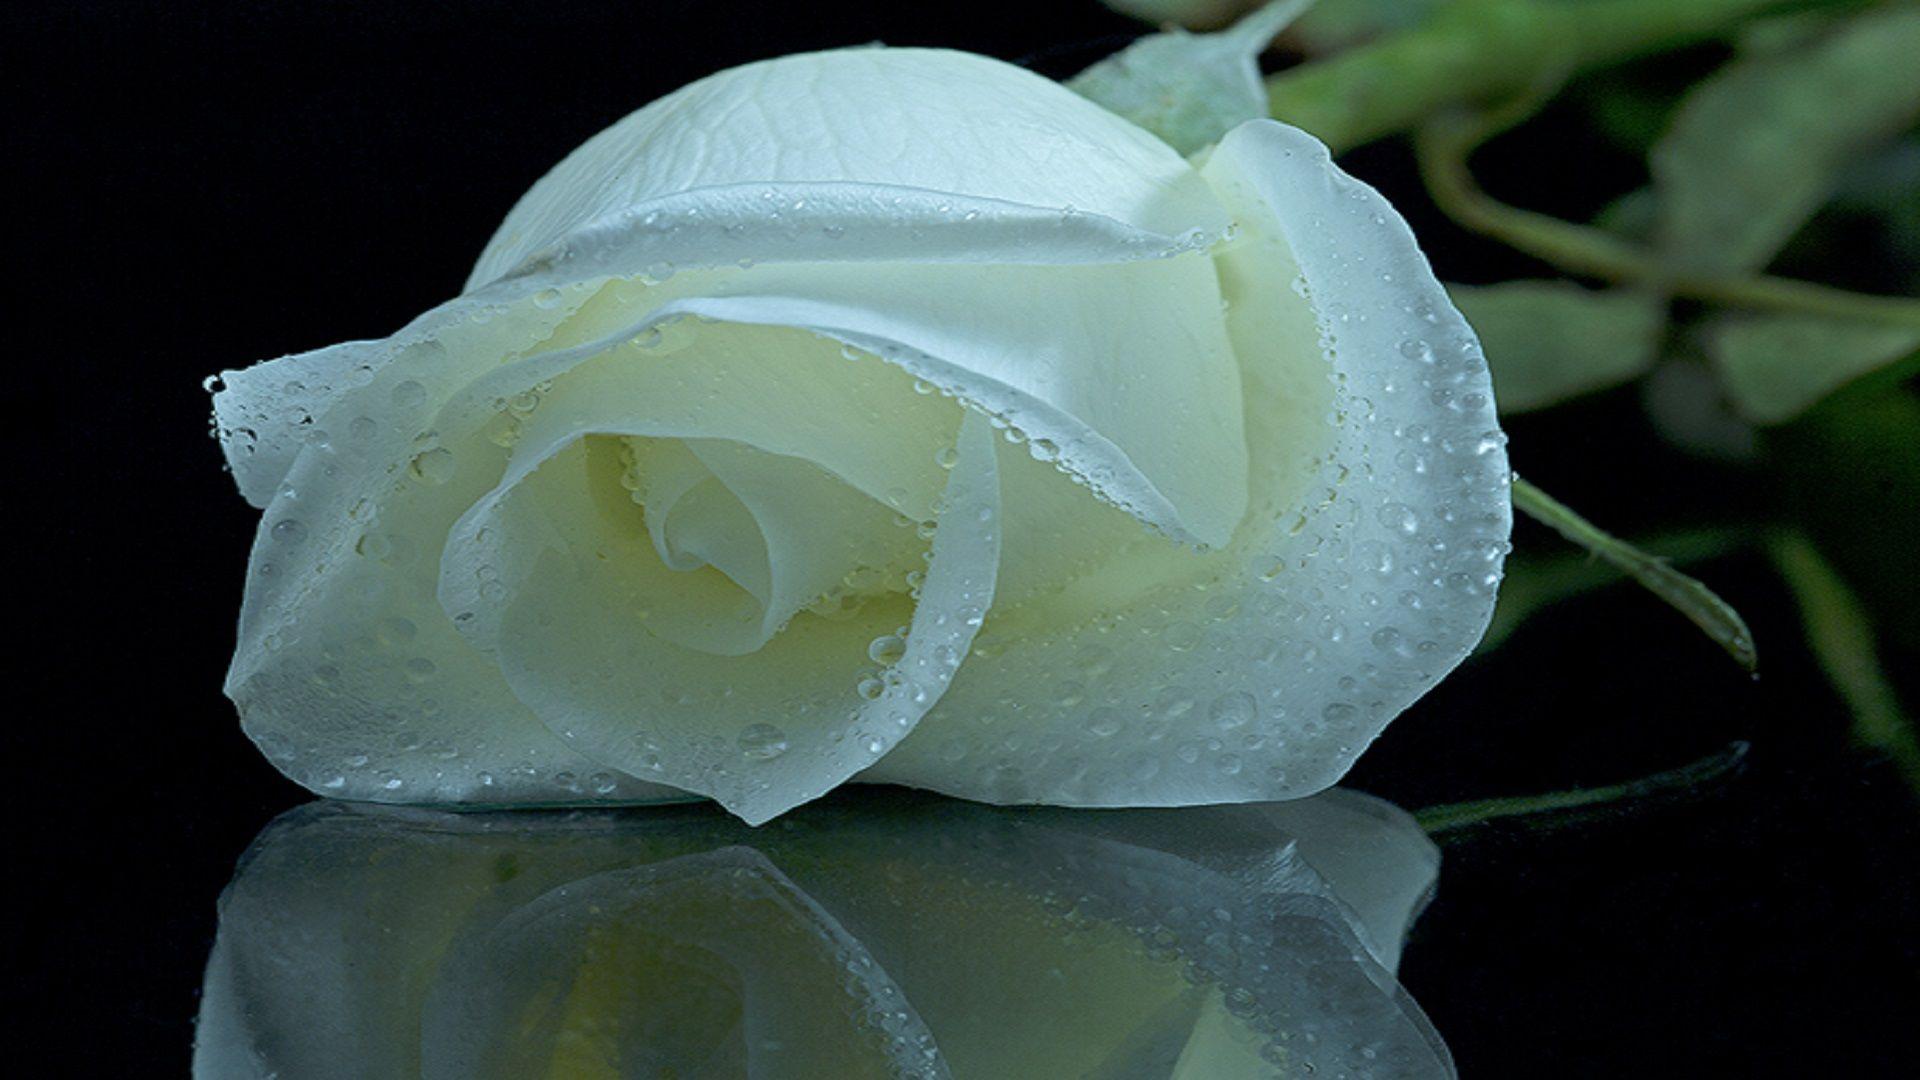 壁纸 白玫瑰花束 2560x1600 HD 高清壁纸, 图片, 照片